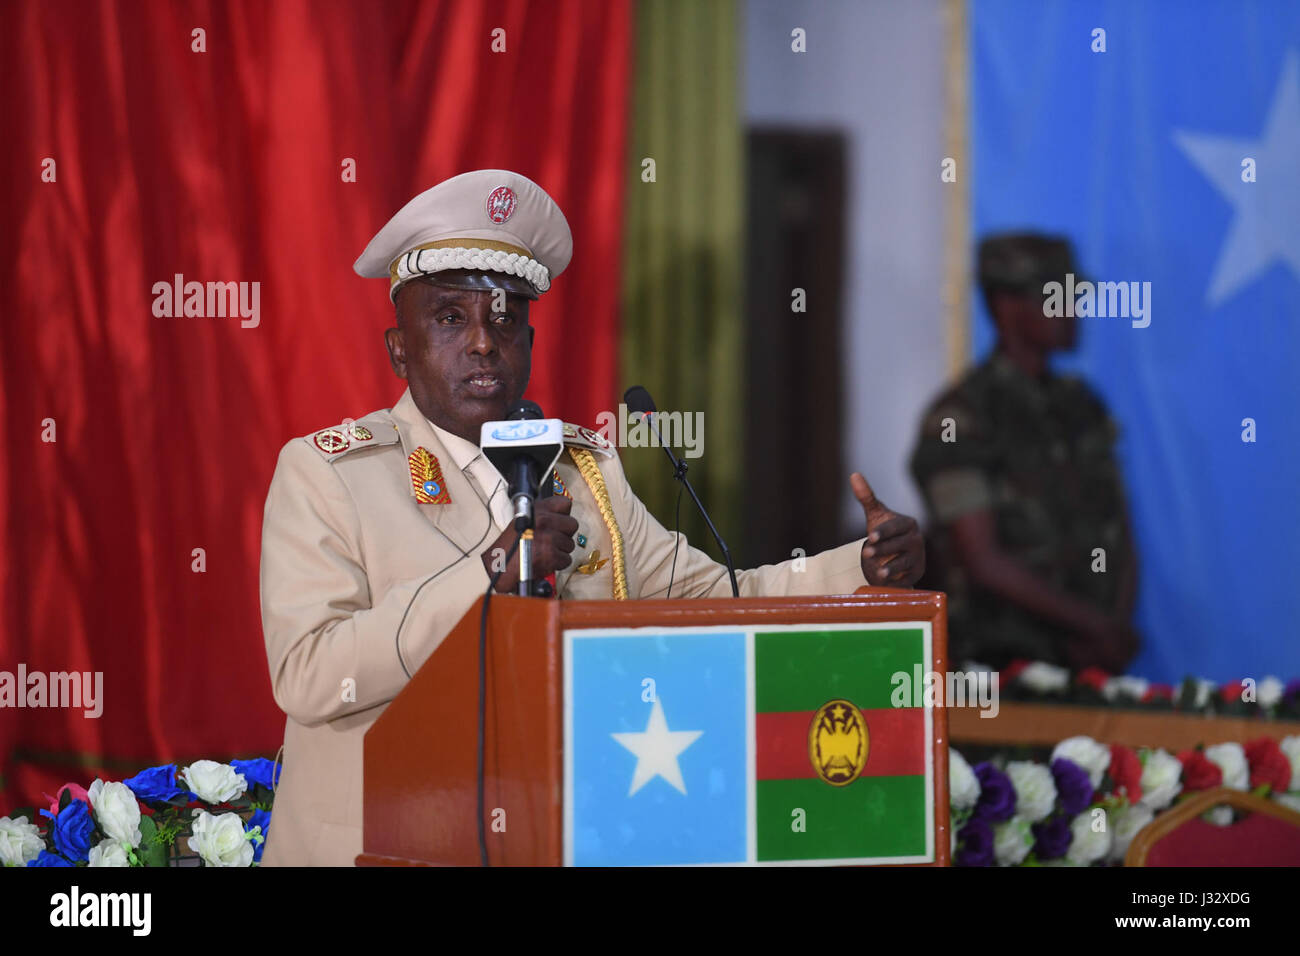 Chef der somalische Verteidigung zwingt, General Mohamed Ahmed Jimaale spricht während einer Zeremonie anlässlich des 57. Jahrestages der somalischen Nationalarmee im Verteidigungsministerium in Mogadischu am 12. April 2017 statt. AMISOM Foto / Ilyas Ahmed Stockfoto